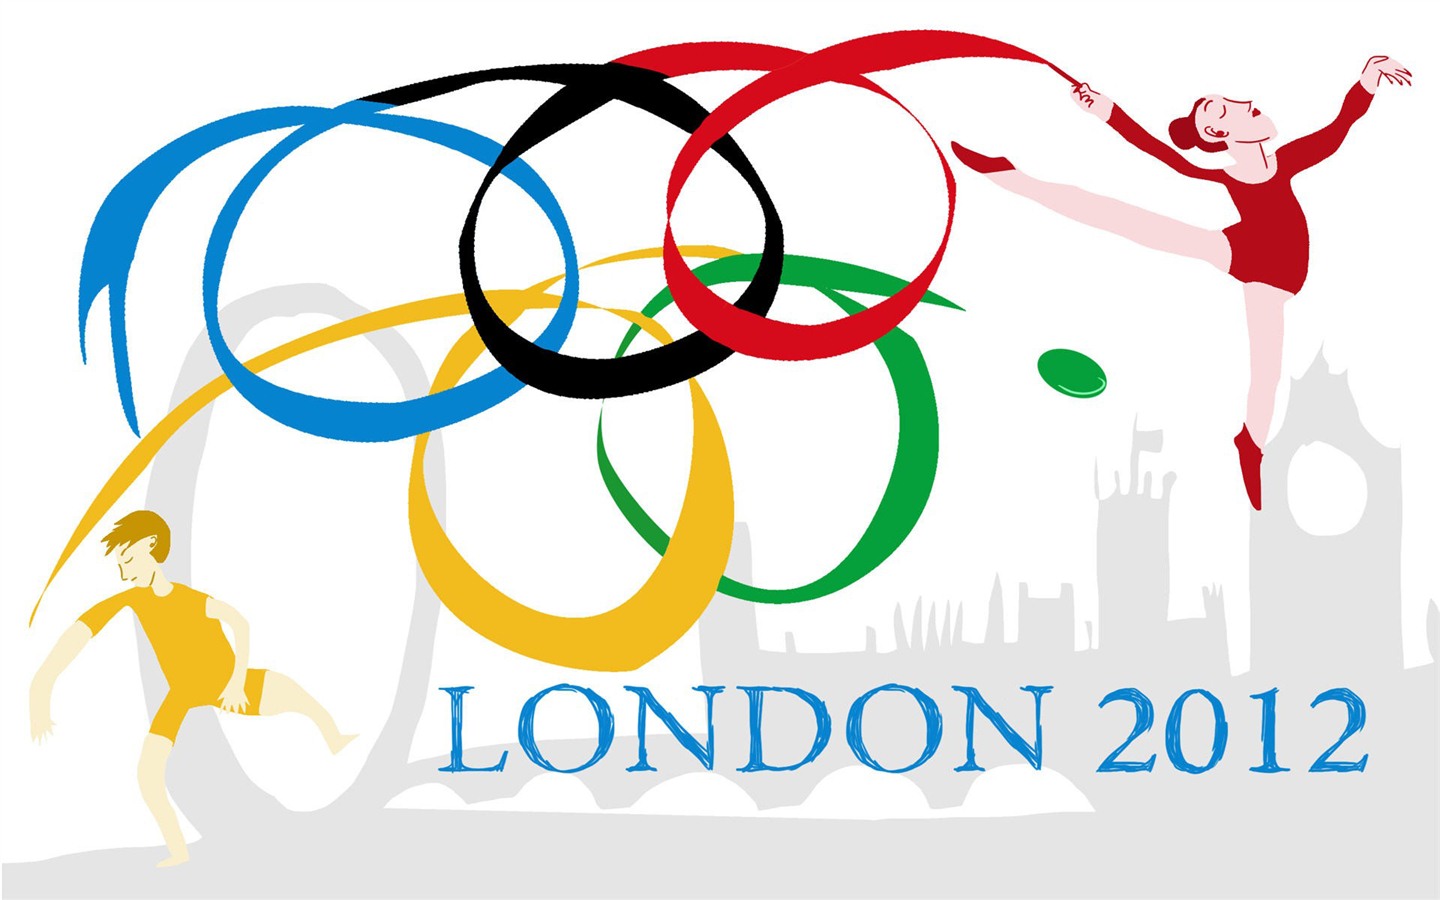 Londres 2012 Olimpiadas fondos temáticos (2) #16 - 1440x900